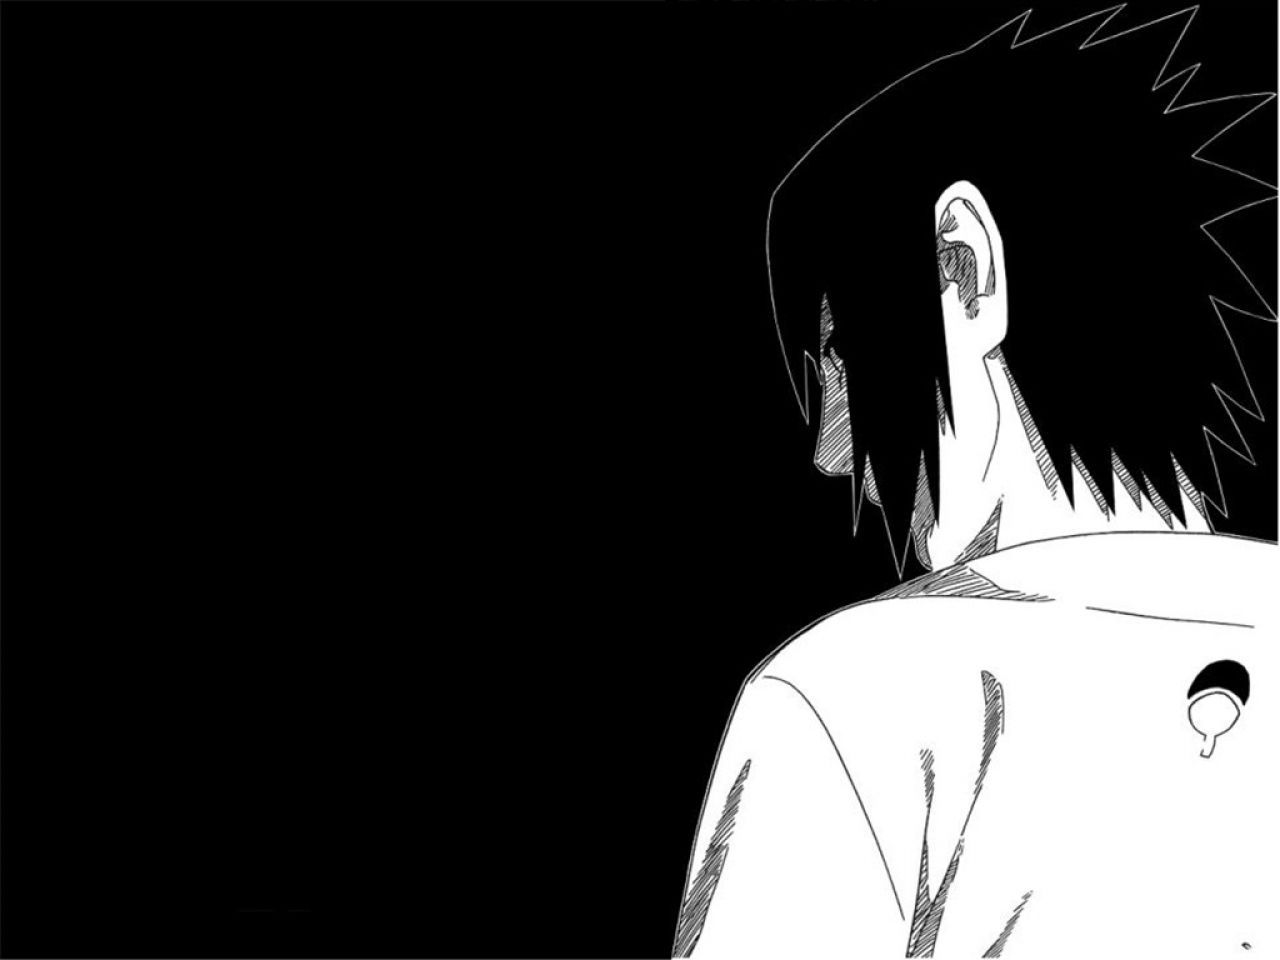 Free Black And White Wallpaper and Black And White Background. Uchiha, Sasuke uchiha shippuden, Black and white background